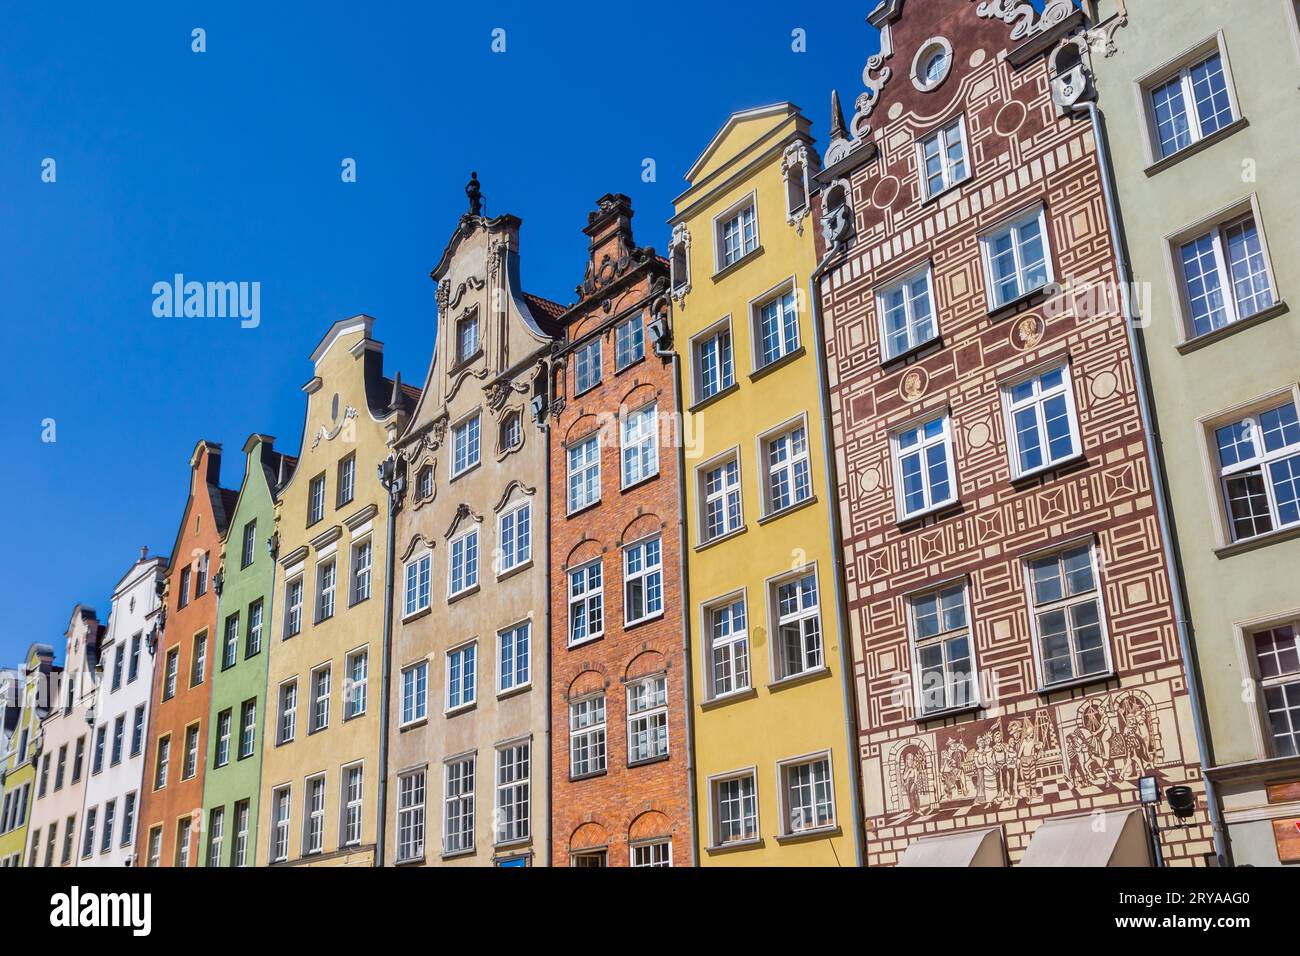 Coloridas casas históricas en la plaza del mercado de Gdansk, Polonia Foto de stock